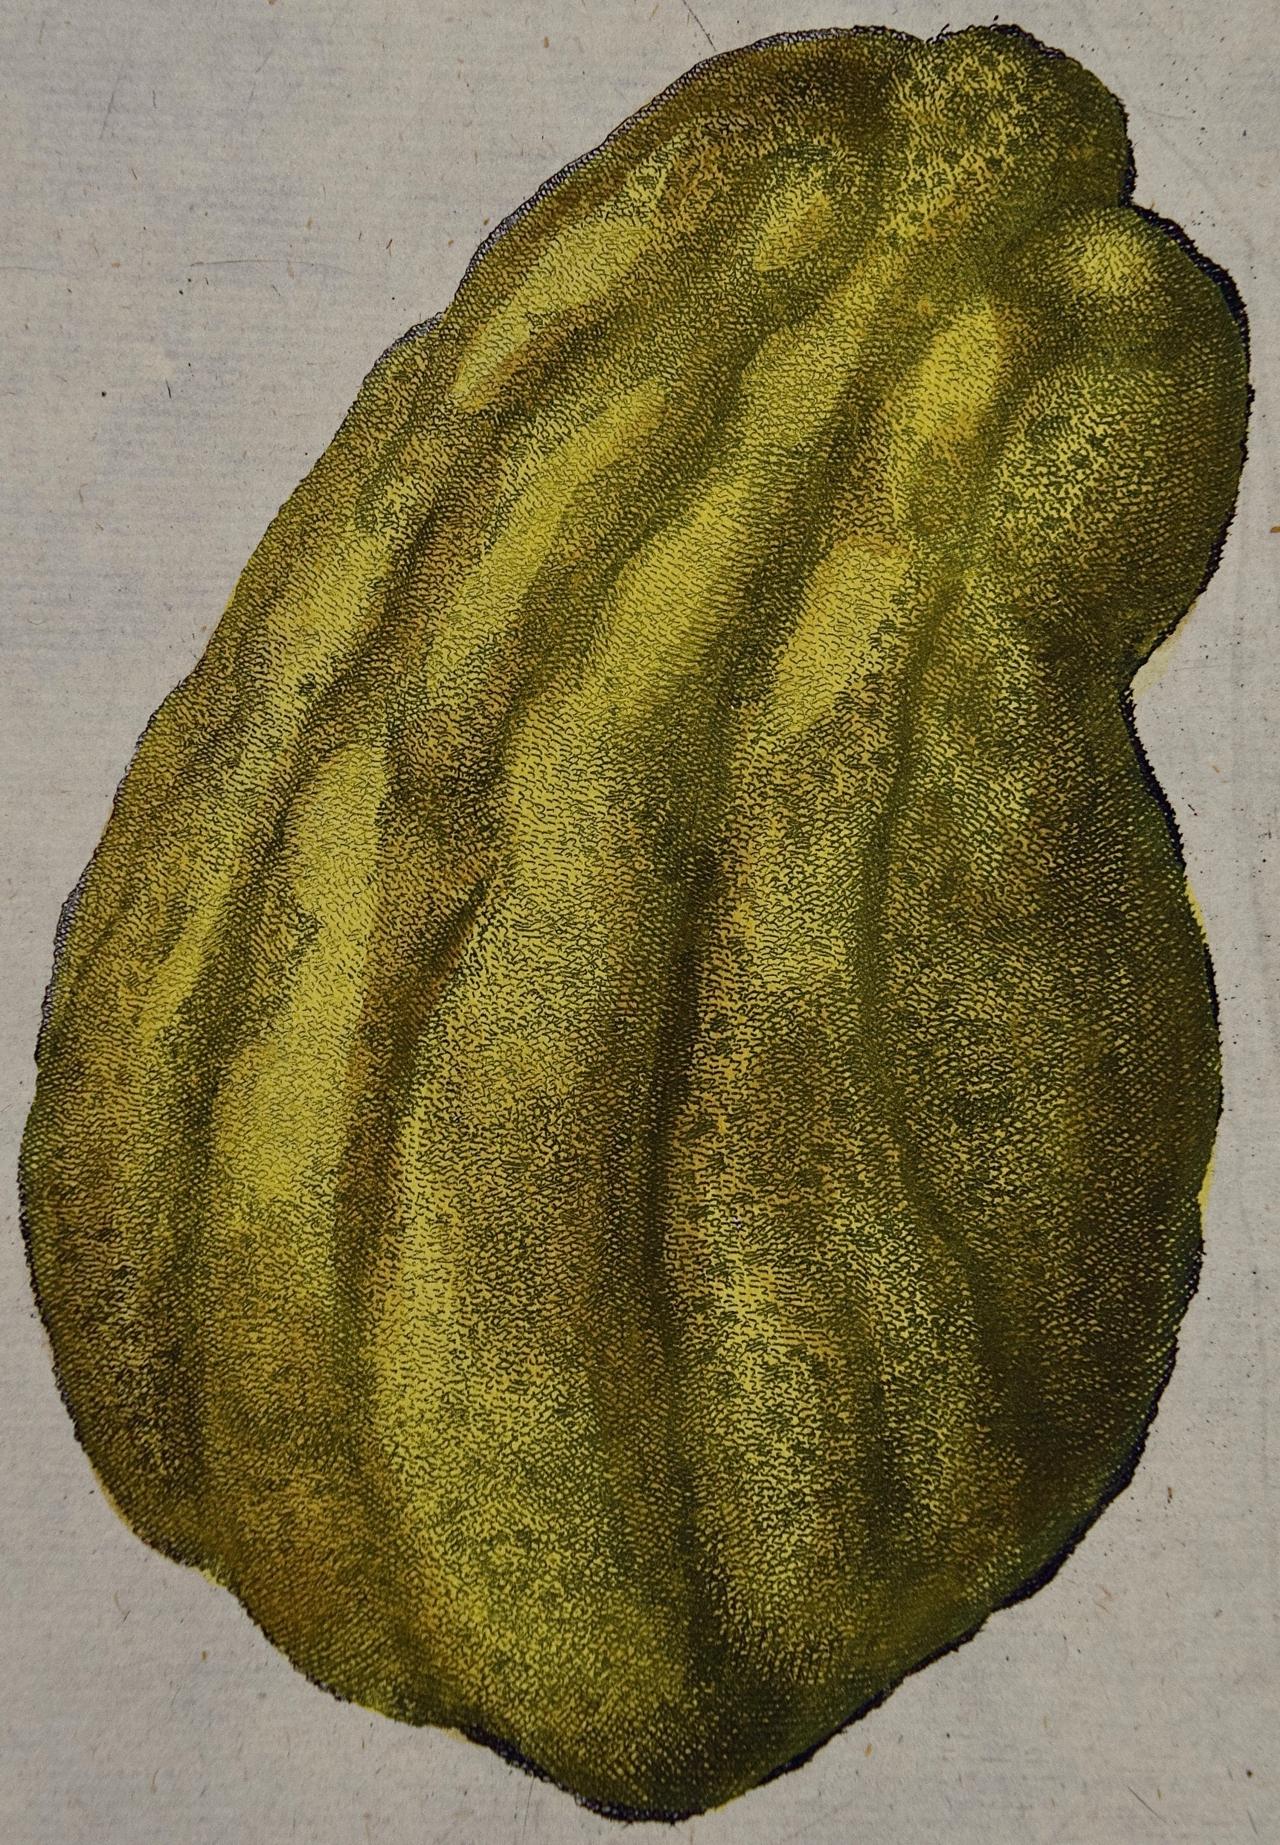 18th C. Volckamer Handkolorierte Zitronengravur 